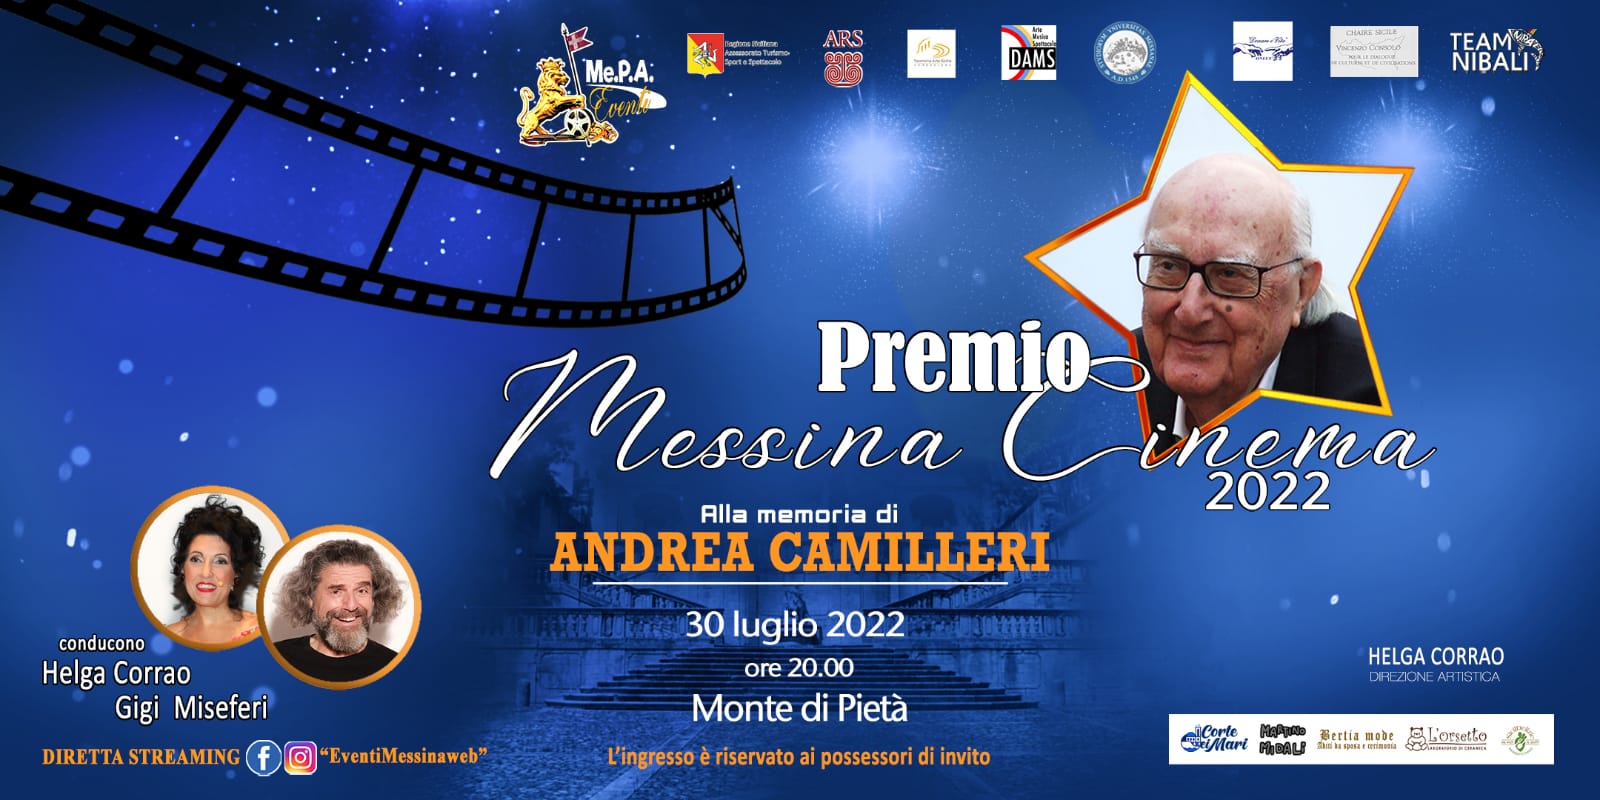 Sabato 23 presentazione del 4° “Premio Messina Cinema”